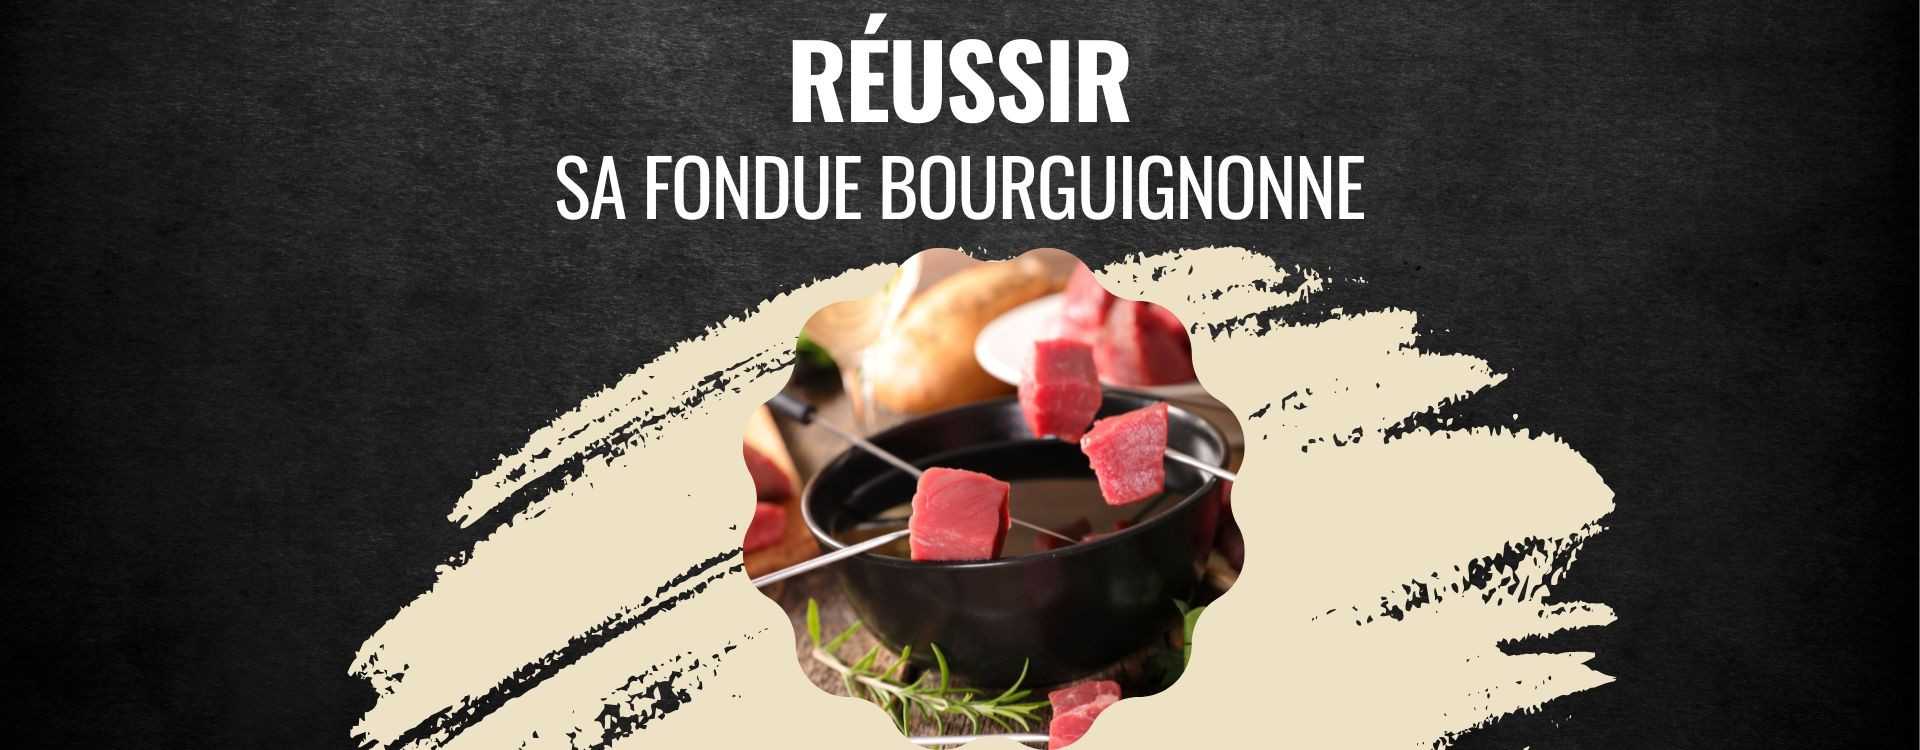 Fondue Bourguignonne : recette et astuces pour la réussir